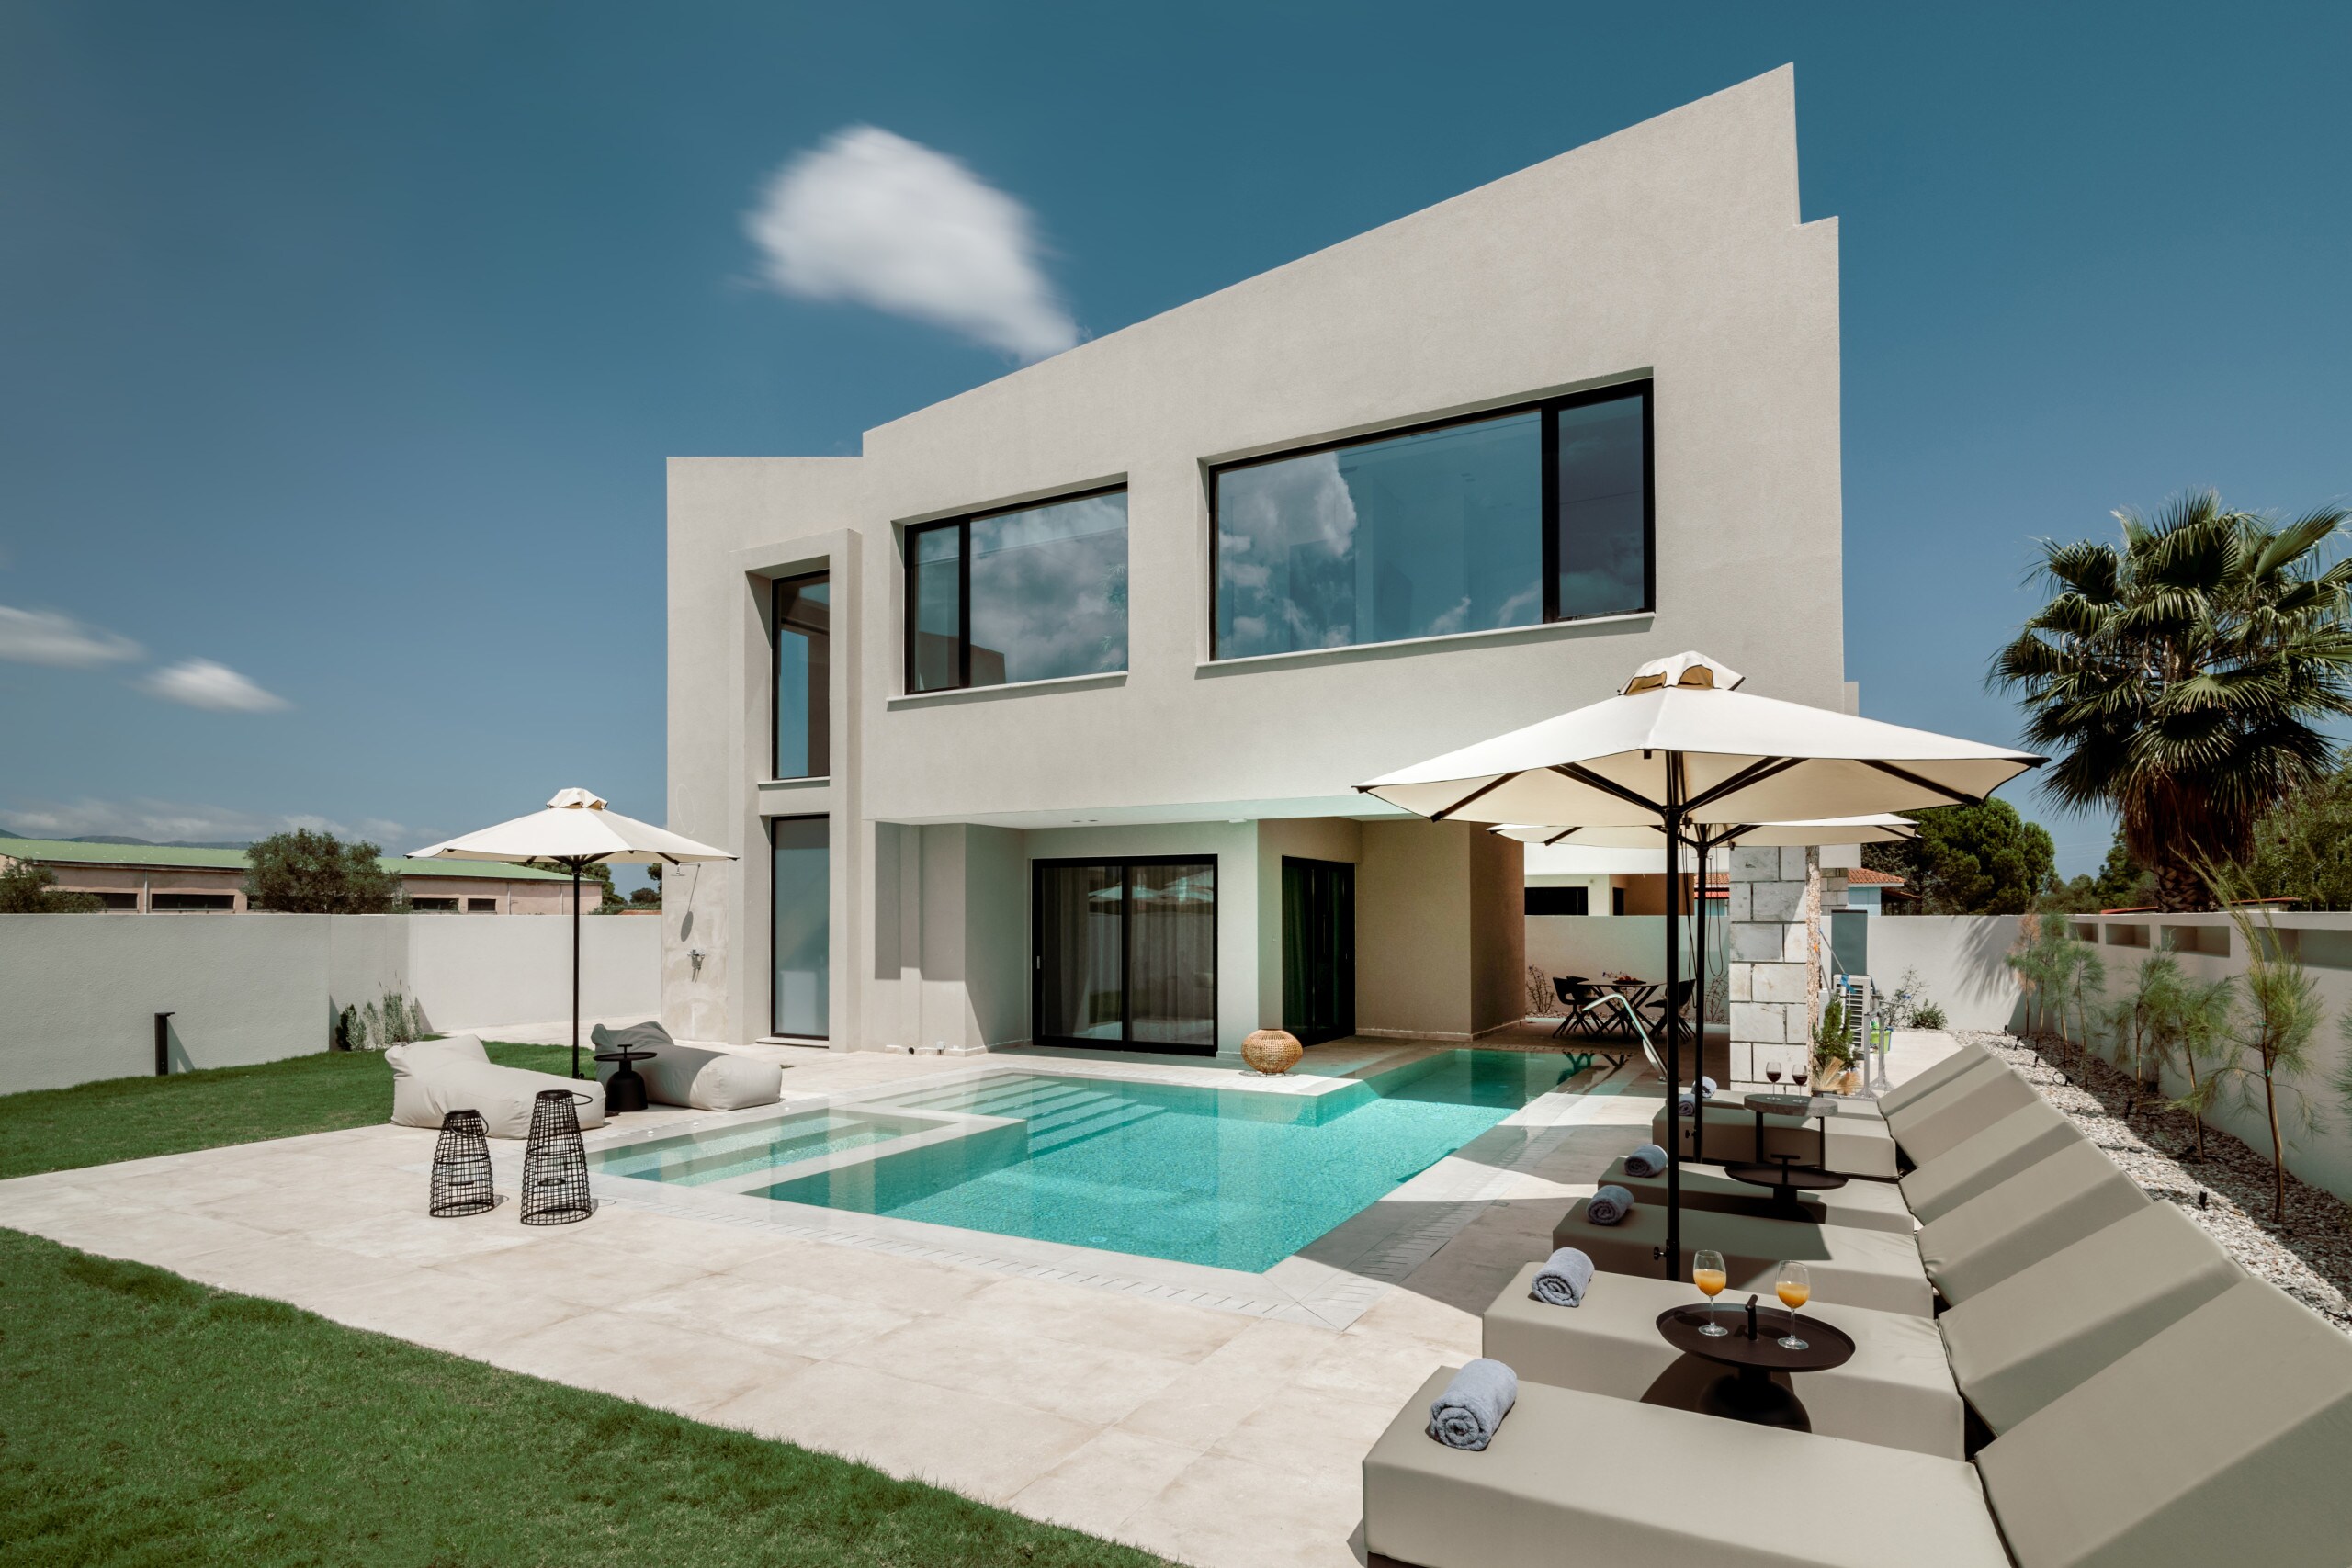 Villa with a sensory driven design private pool